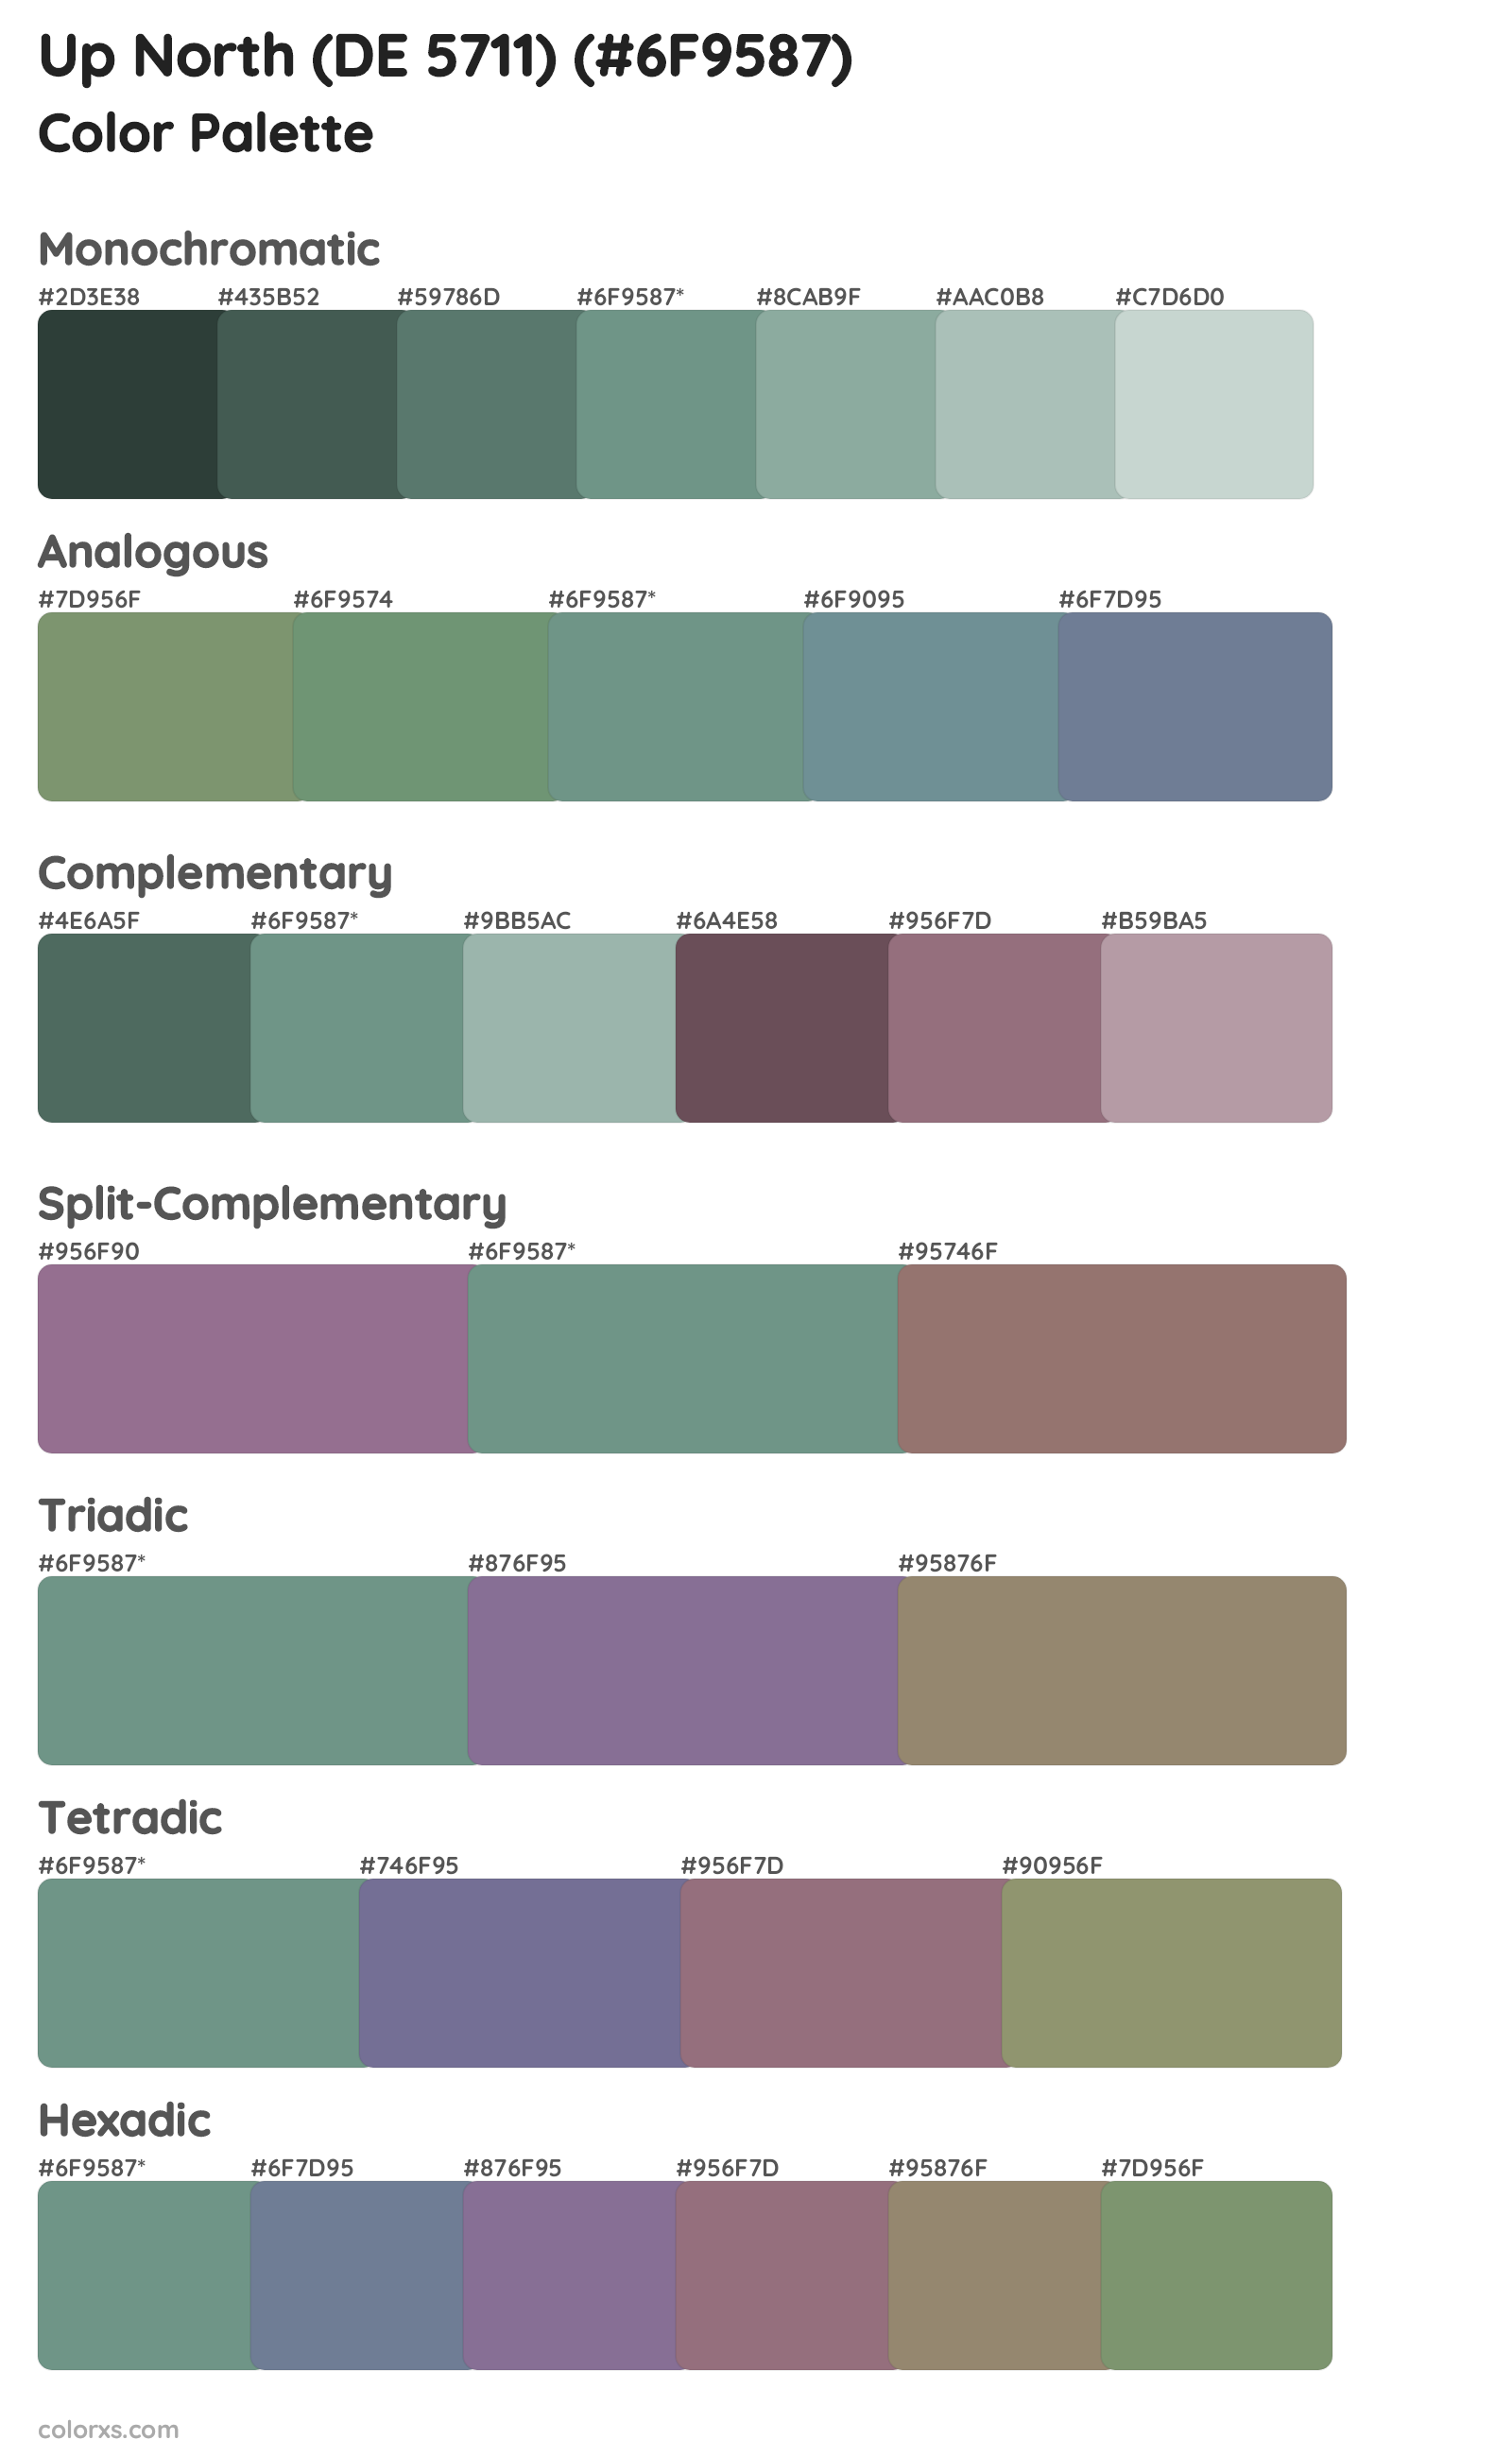 Up North (DE 5711) Color Scheme Palettes